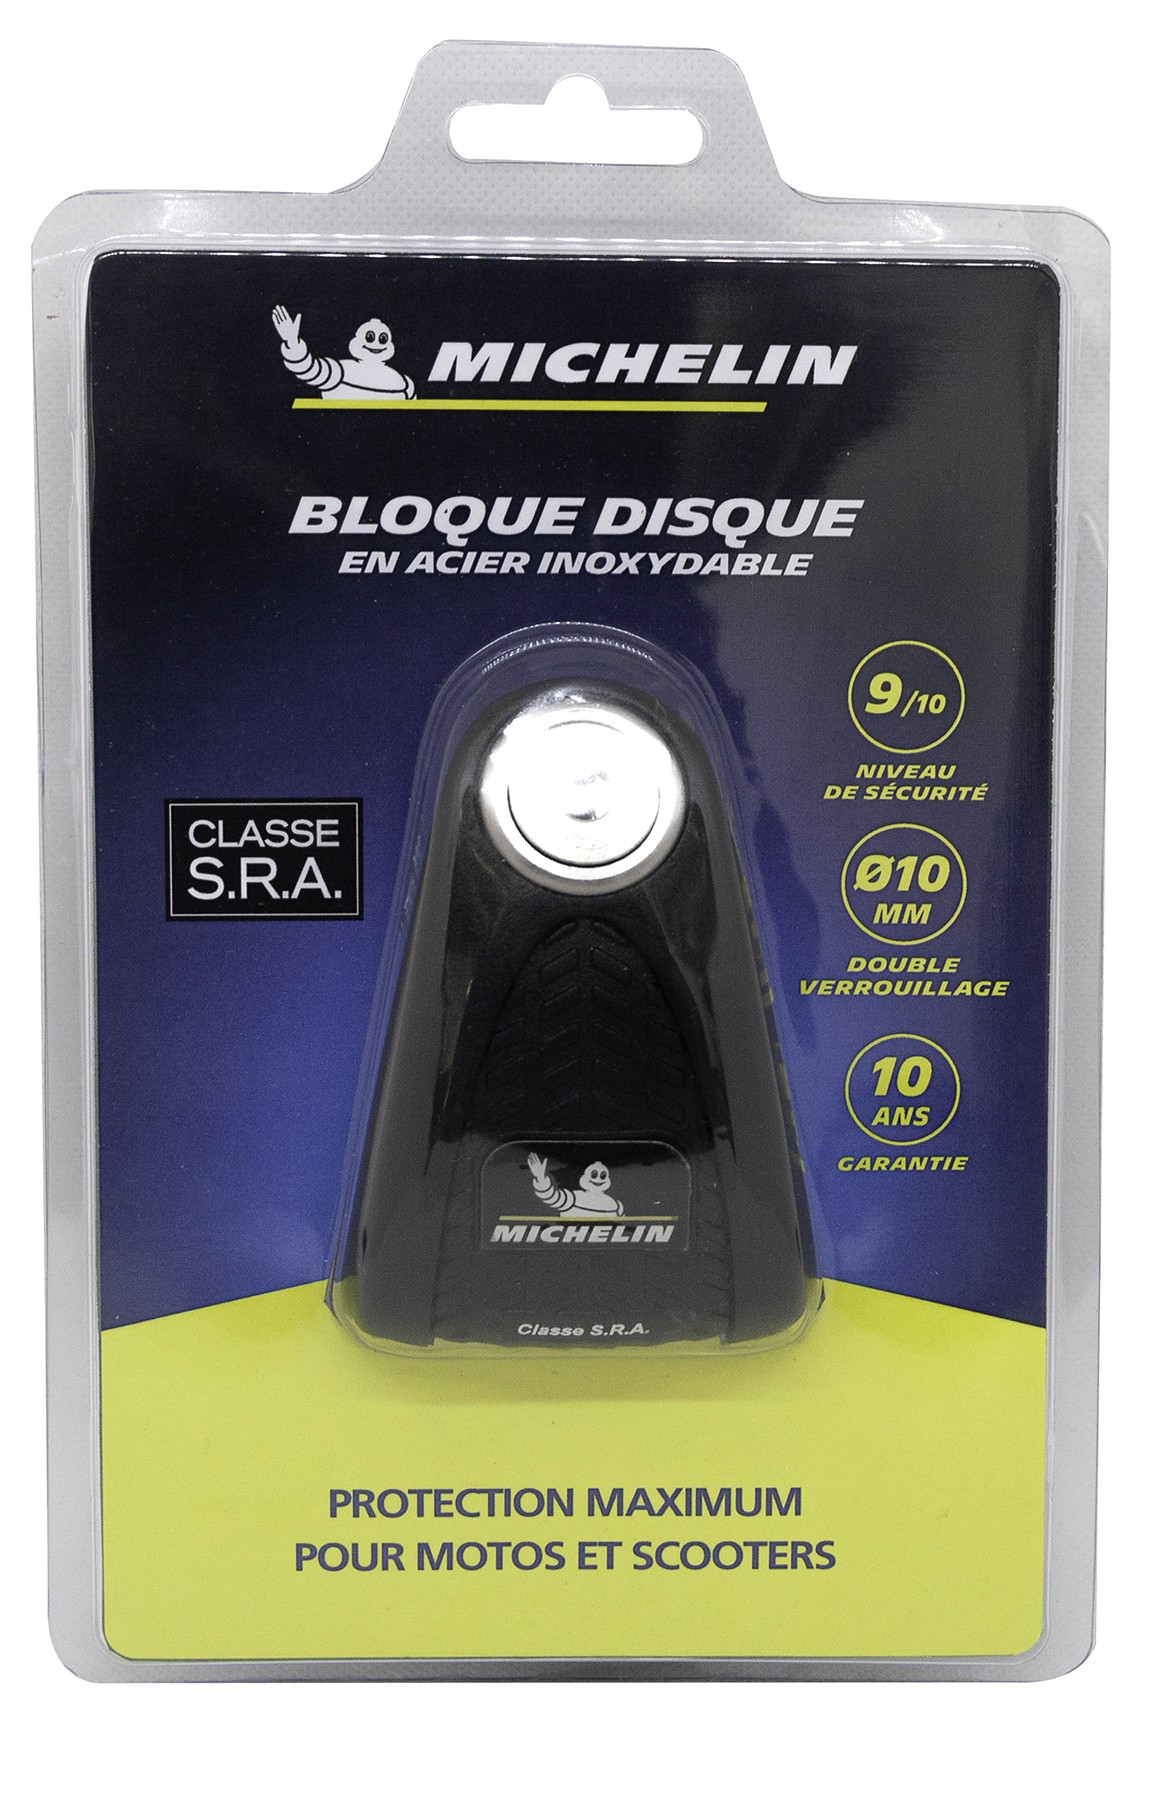 Michelin Bloque disque SRA